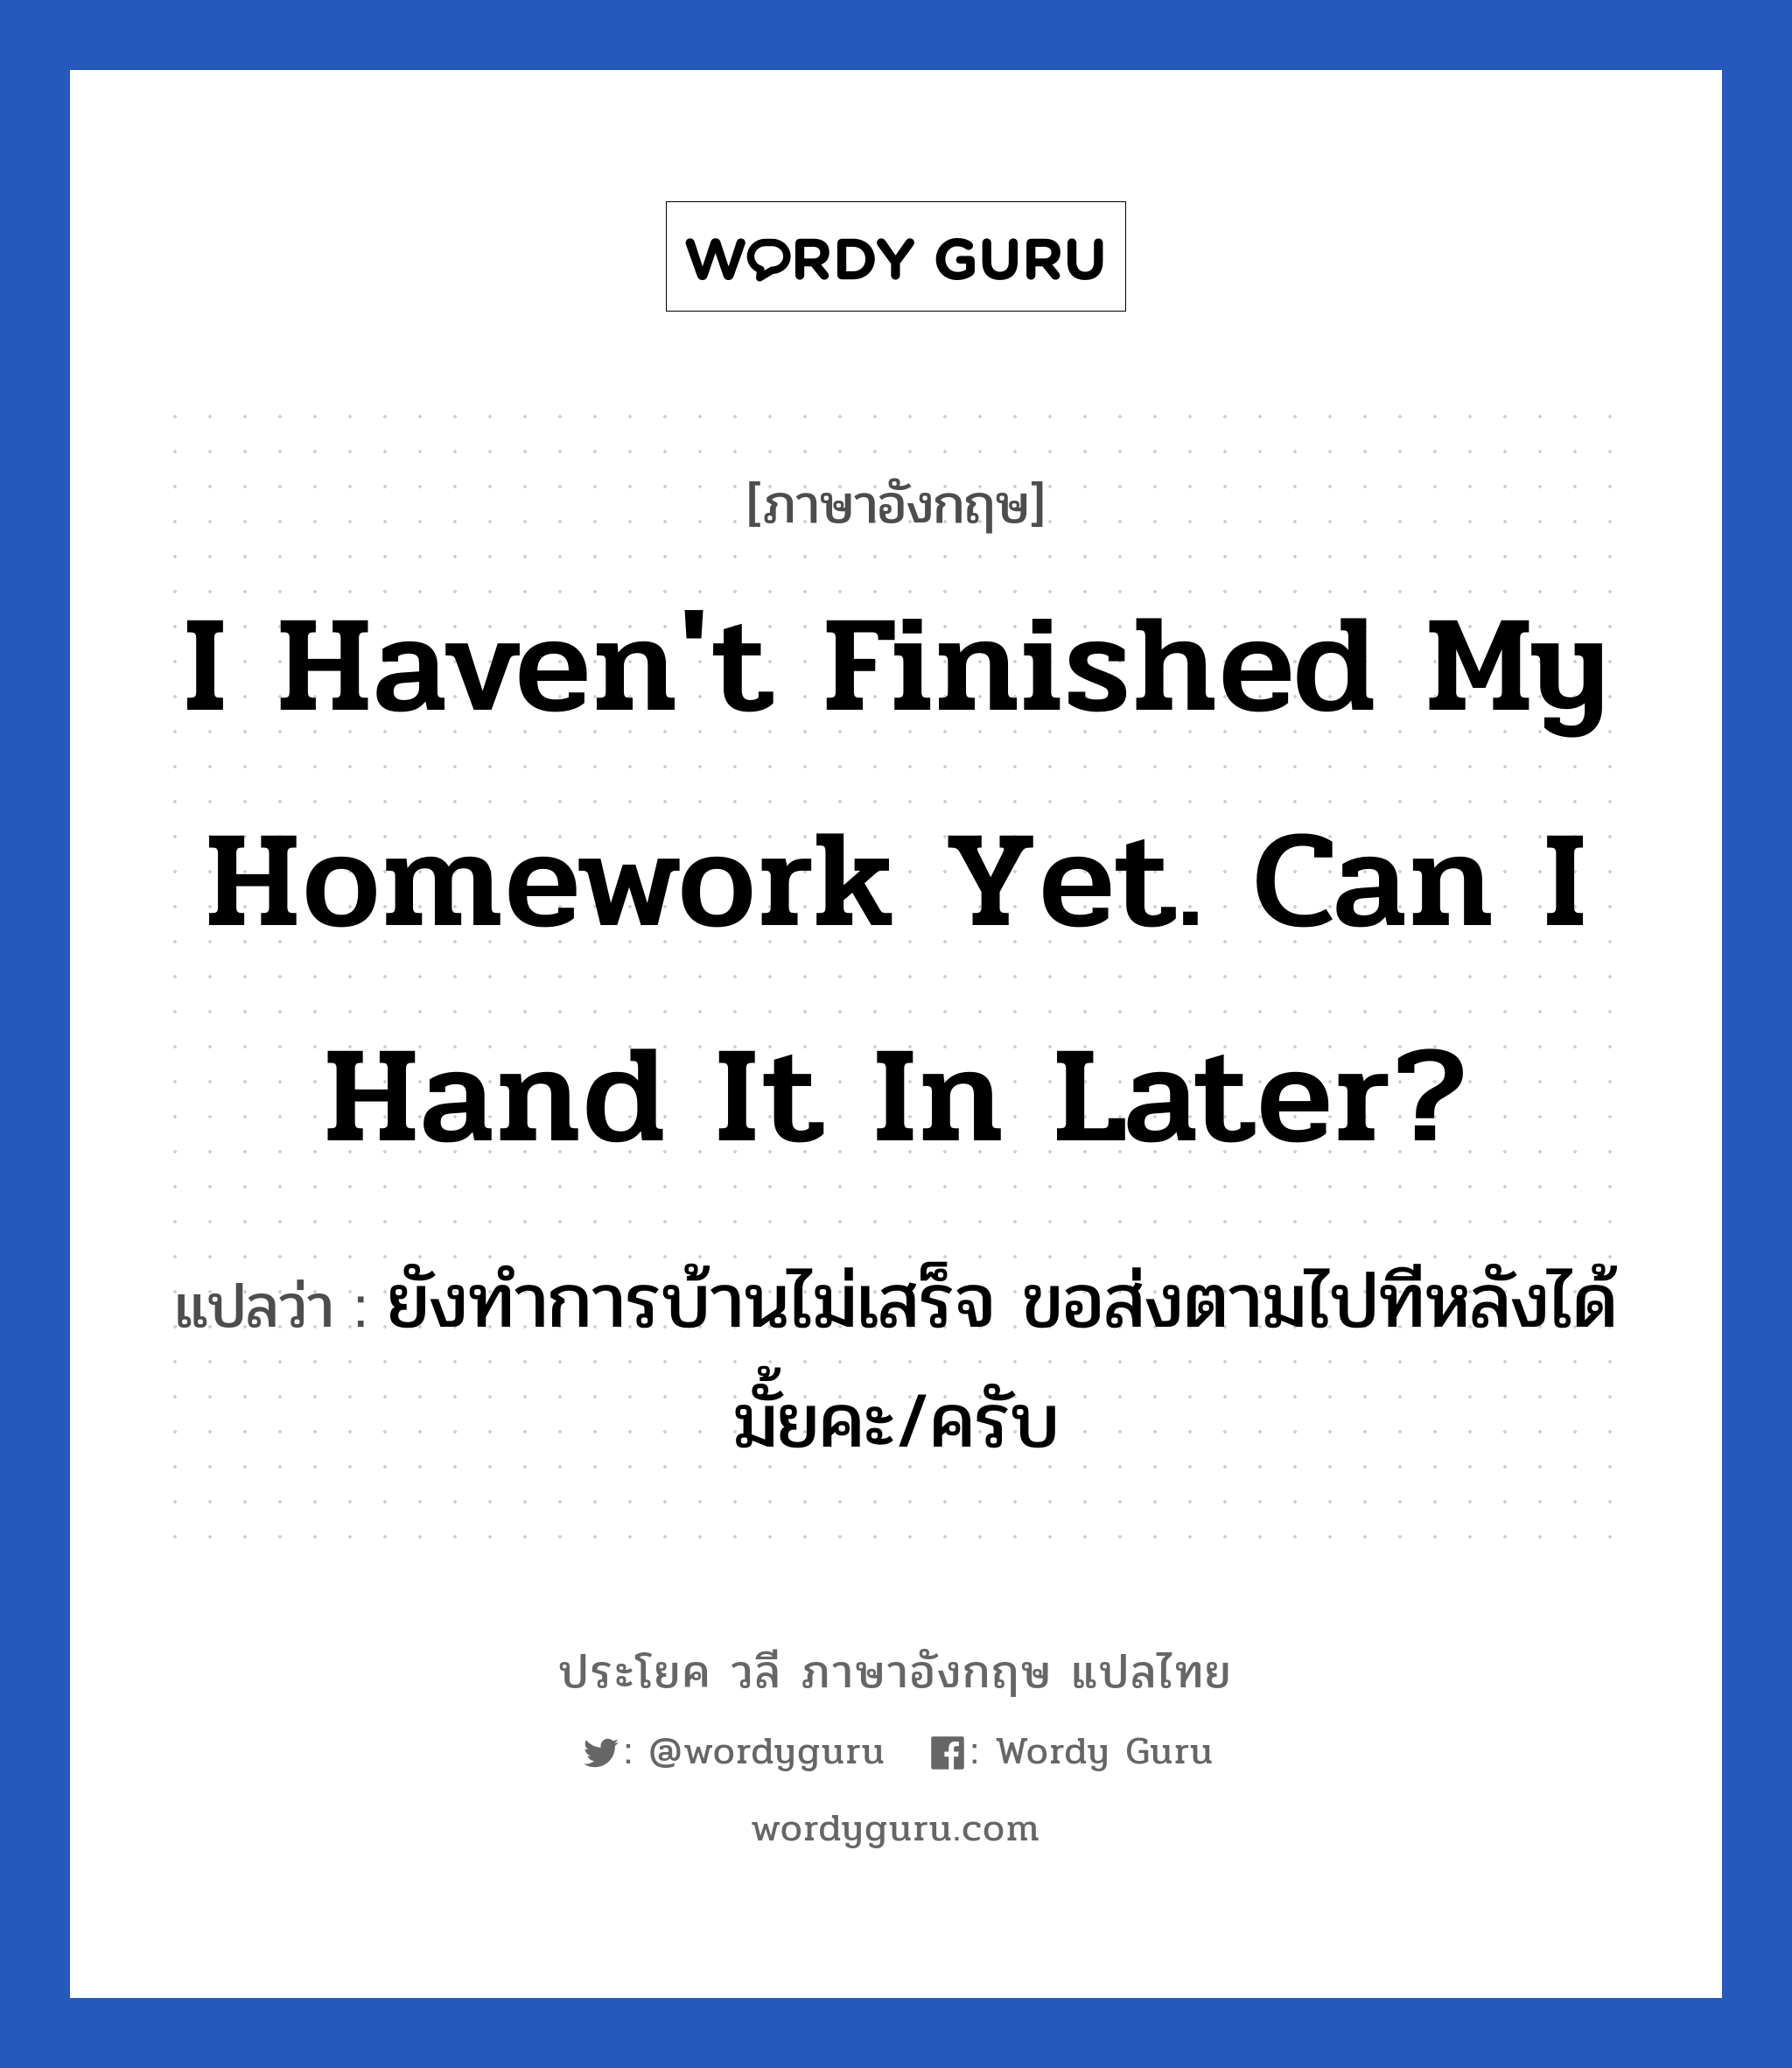 ยังทำการบ้านไม่เสร็จ ขอส่งตามไปทีหลังได้มั้ยคะ/ครับ ภาษาอังกฤษ? | Wordy Guru